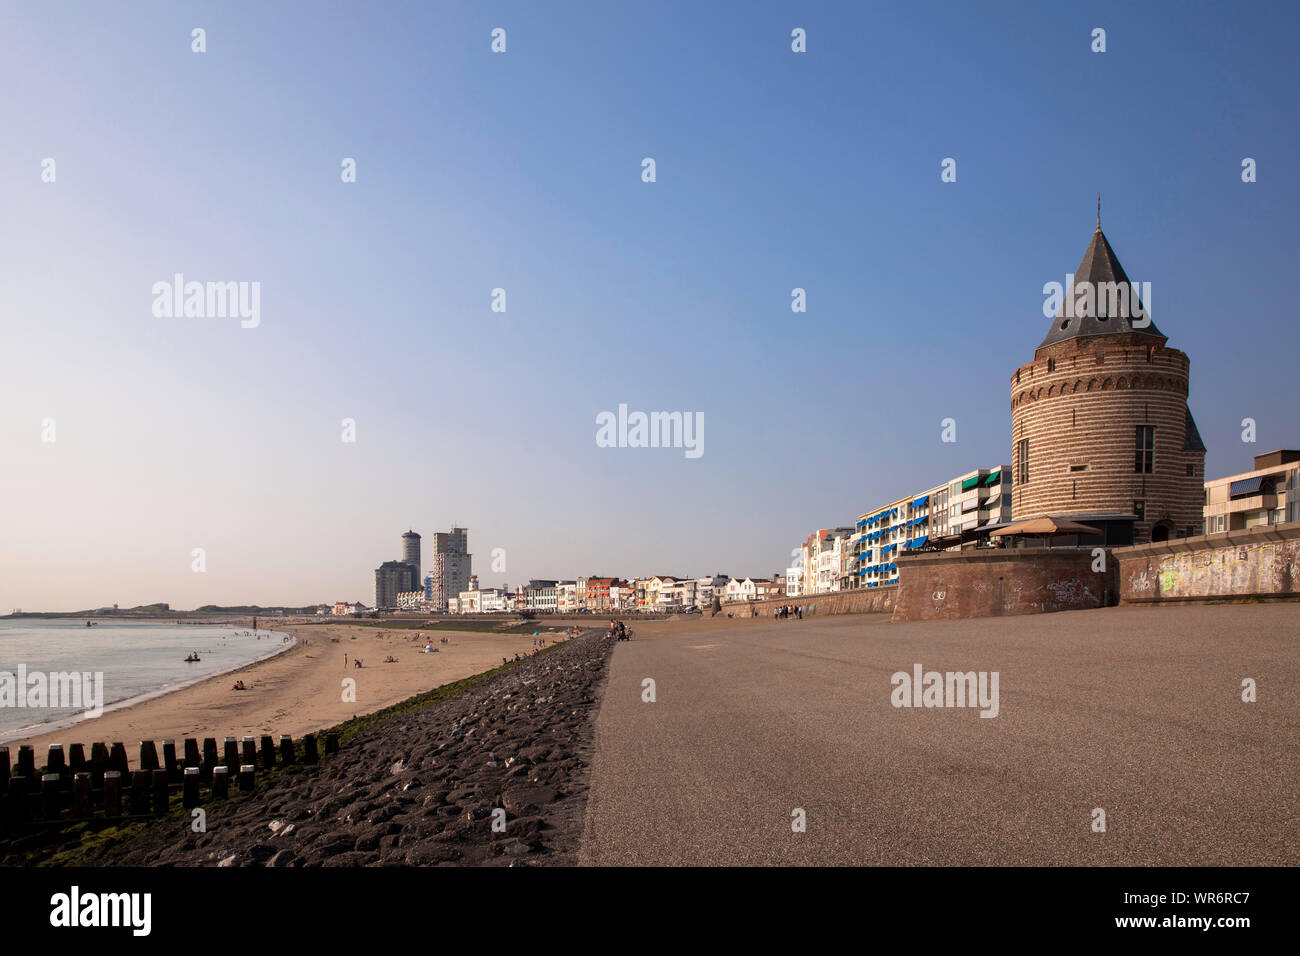 La playa de Vlissingen, edificios en el Boulevard Bankert, Walcheren, la histórica torre de la prisión, de Zeeland, Holanda. der Strand en Vlissingen, Haeuser Foto de stock